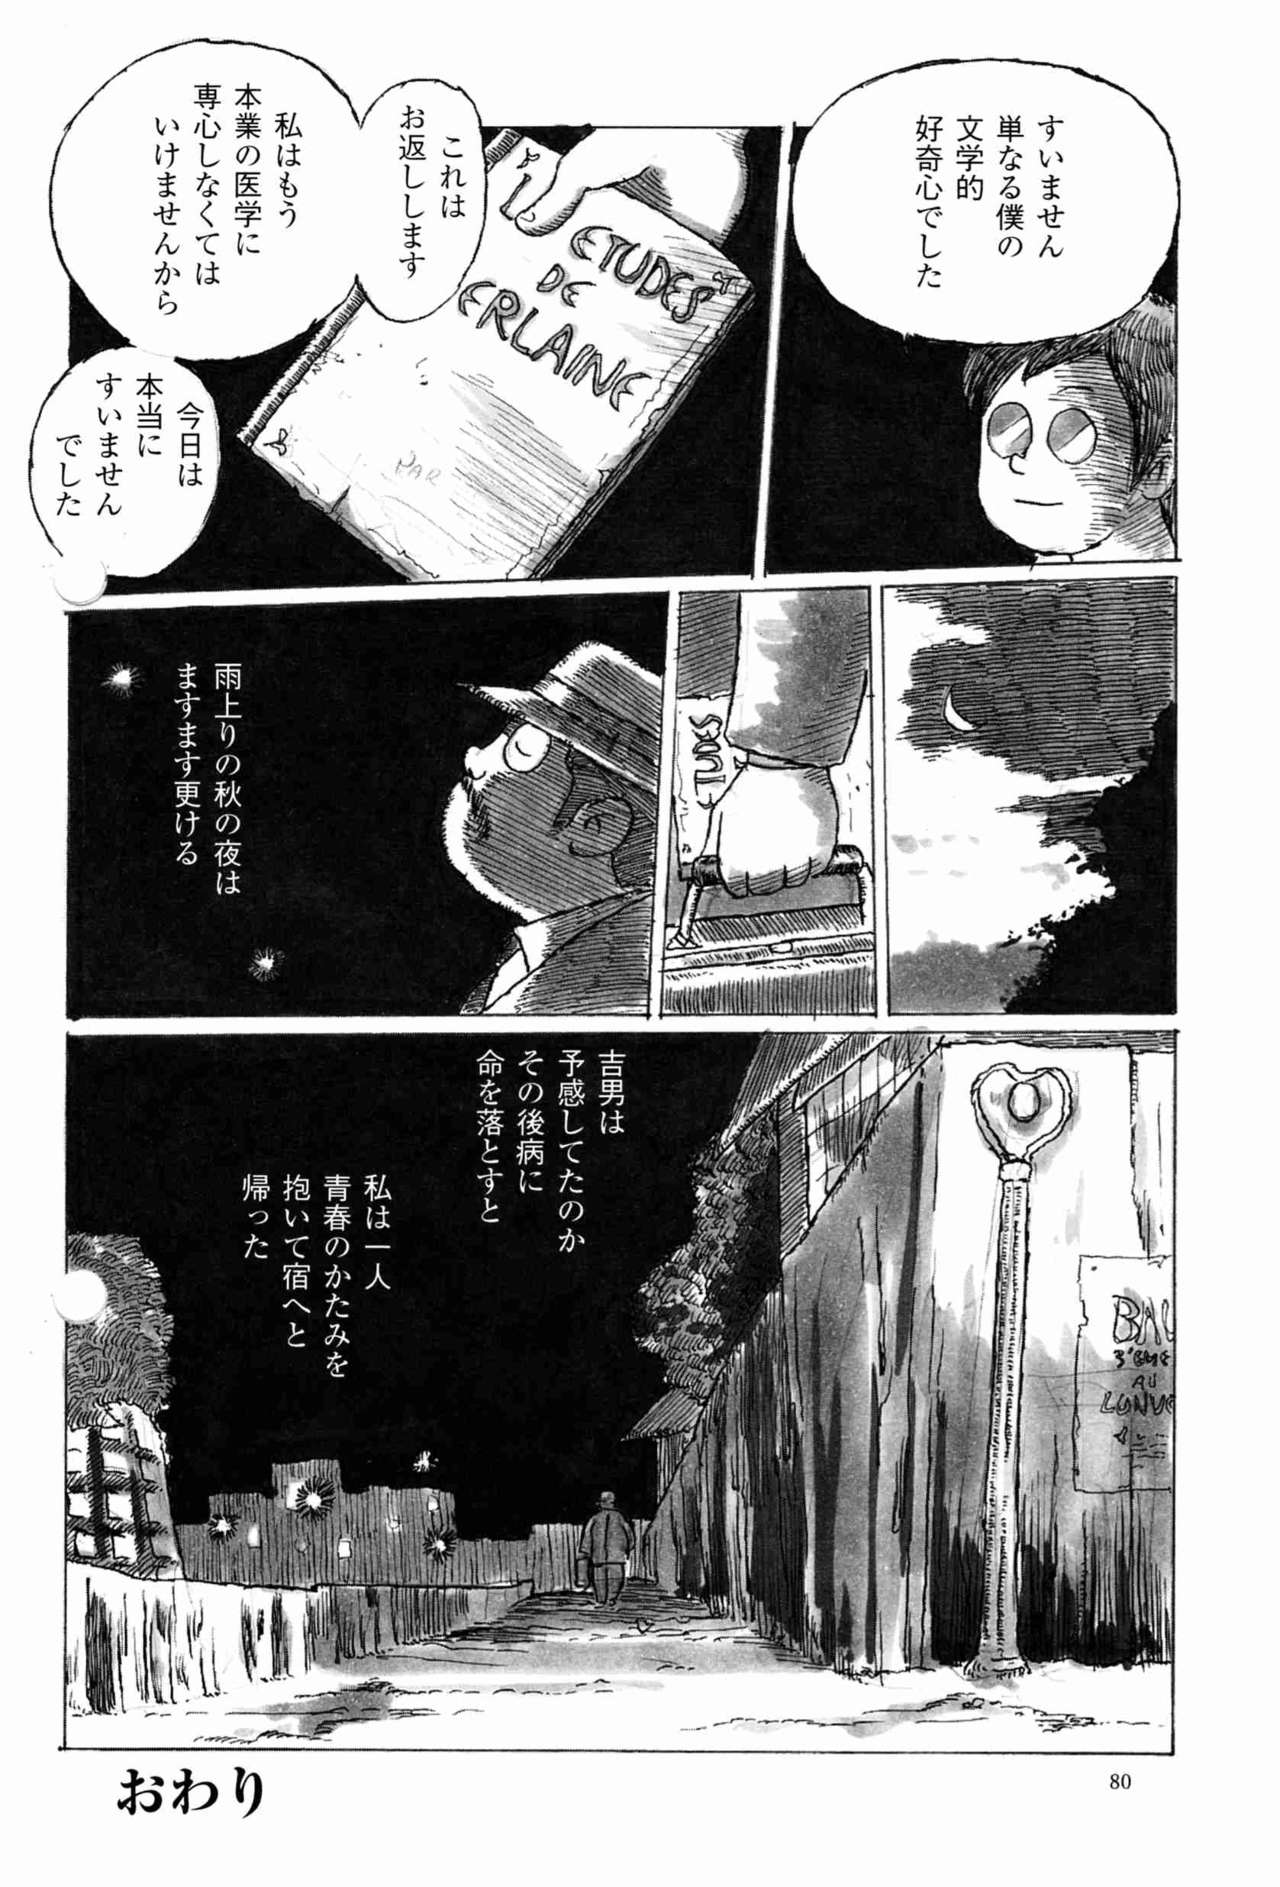 [小日向] 出郷 (SAMSON No.222 2001年01月)